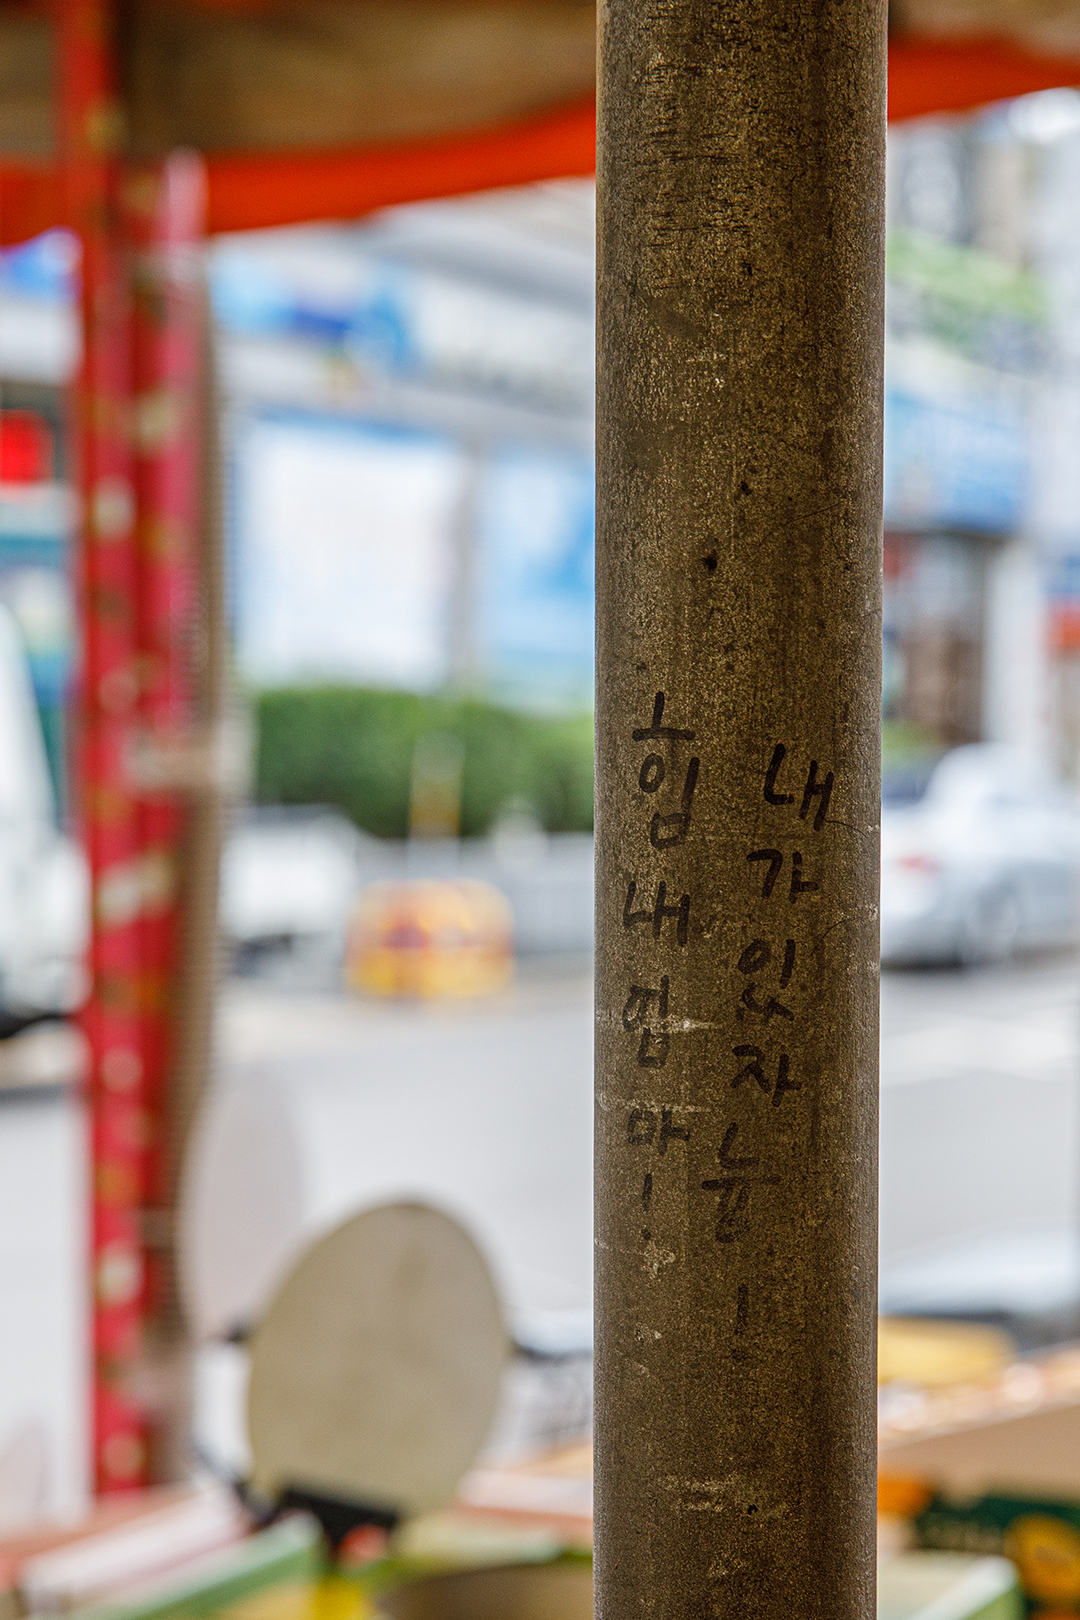 김인순 사장은 12년 전 연무시장으로 가게를 옮겼다. 당시 중학생이던 딸 다희가 파이프 기둥에 적은 응원 문구가 아직도 선명하게 남아있다. “내가 있자늉! 힘내 엄마!” [사진=오상민 작가]